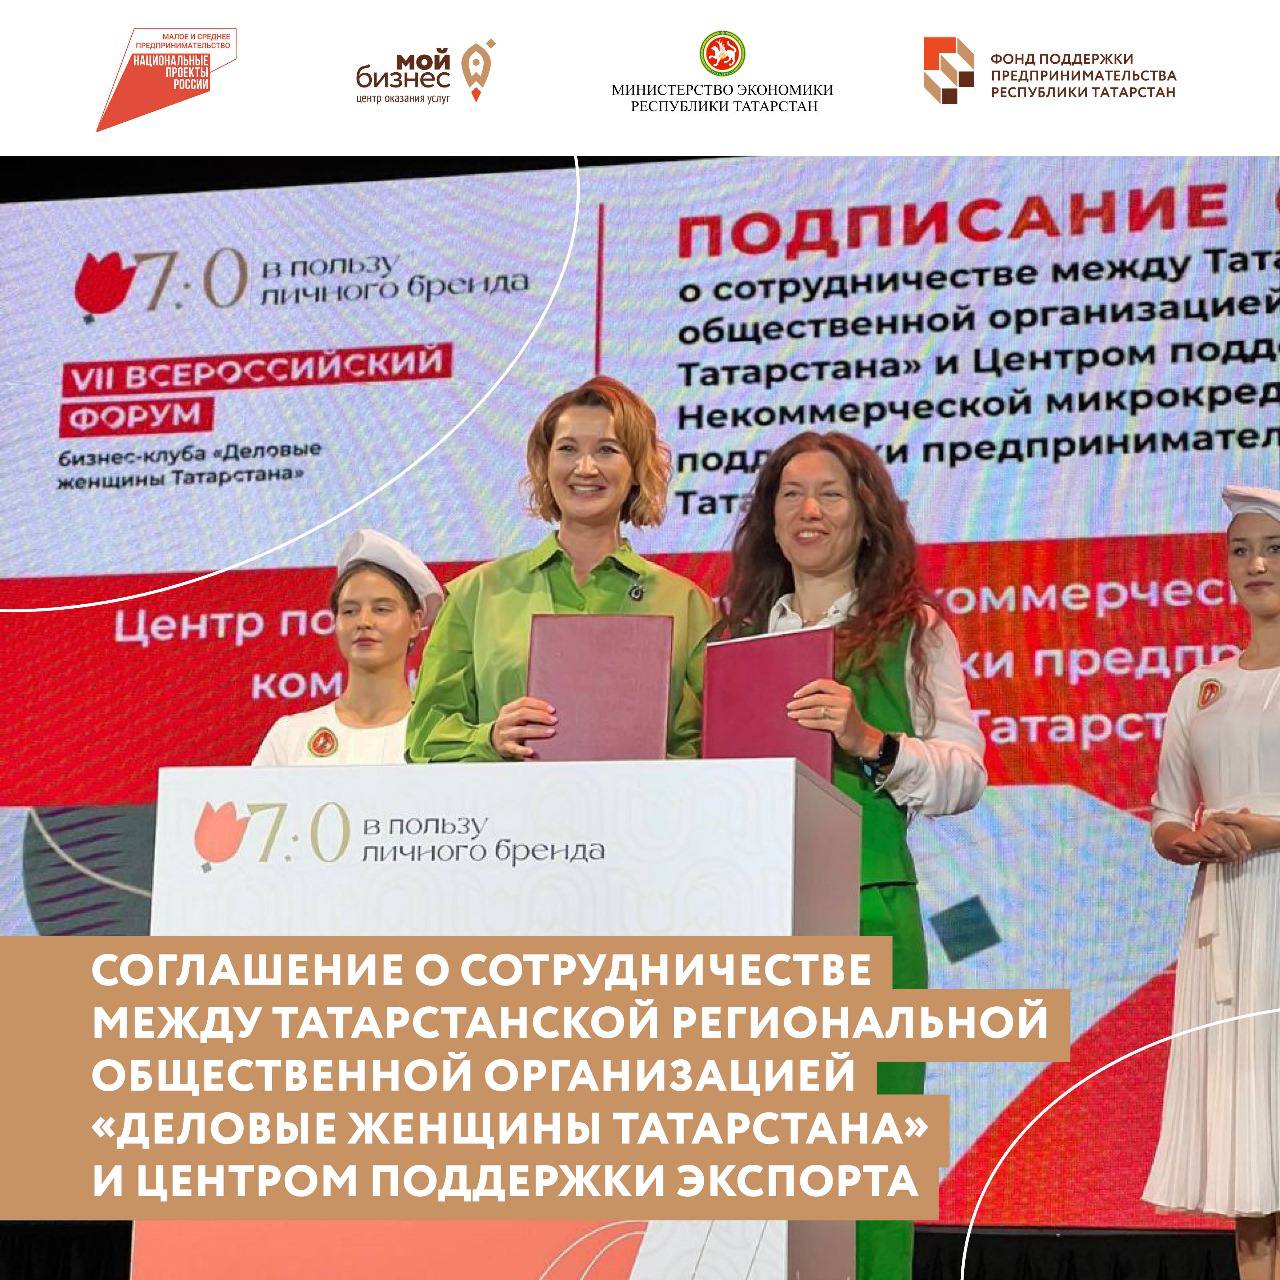 Центр поддержки экспорта подписал соглашение о сотрудничестве с Татарстанской региональной общественной организацией «Деловые женщины Татарстана».